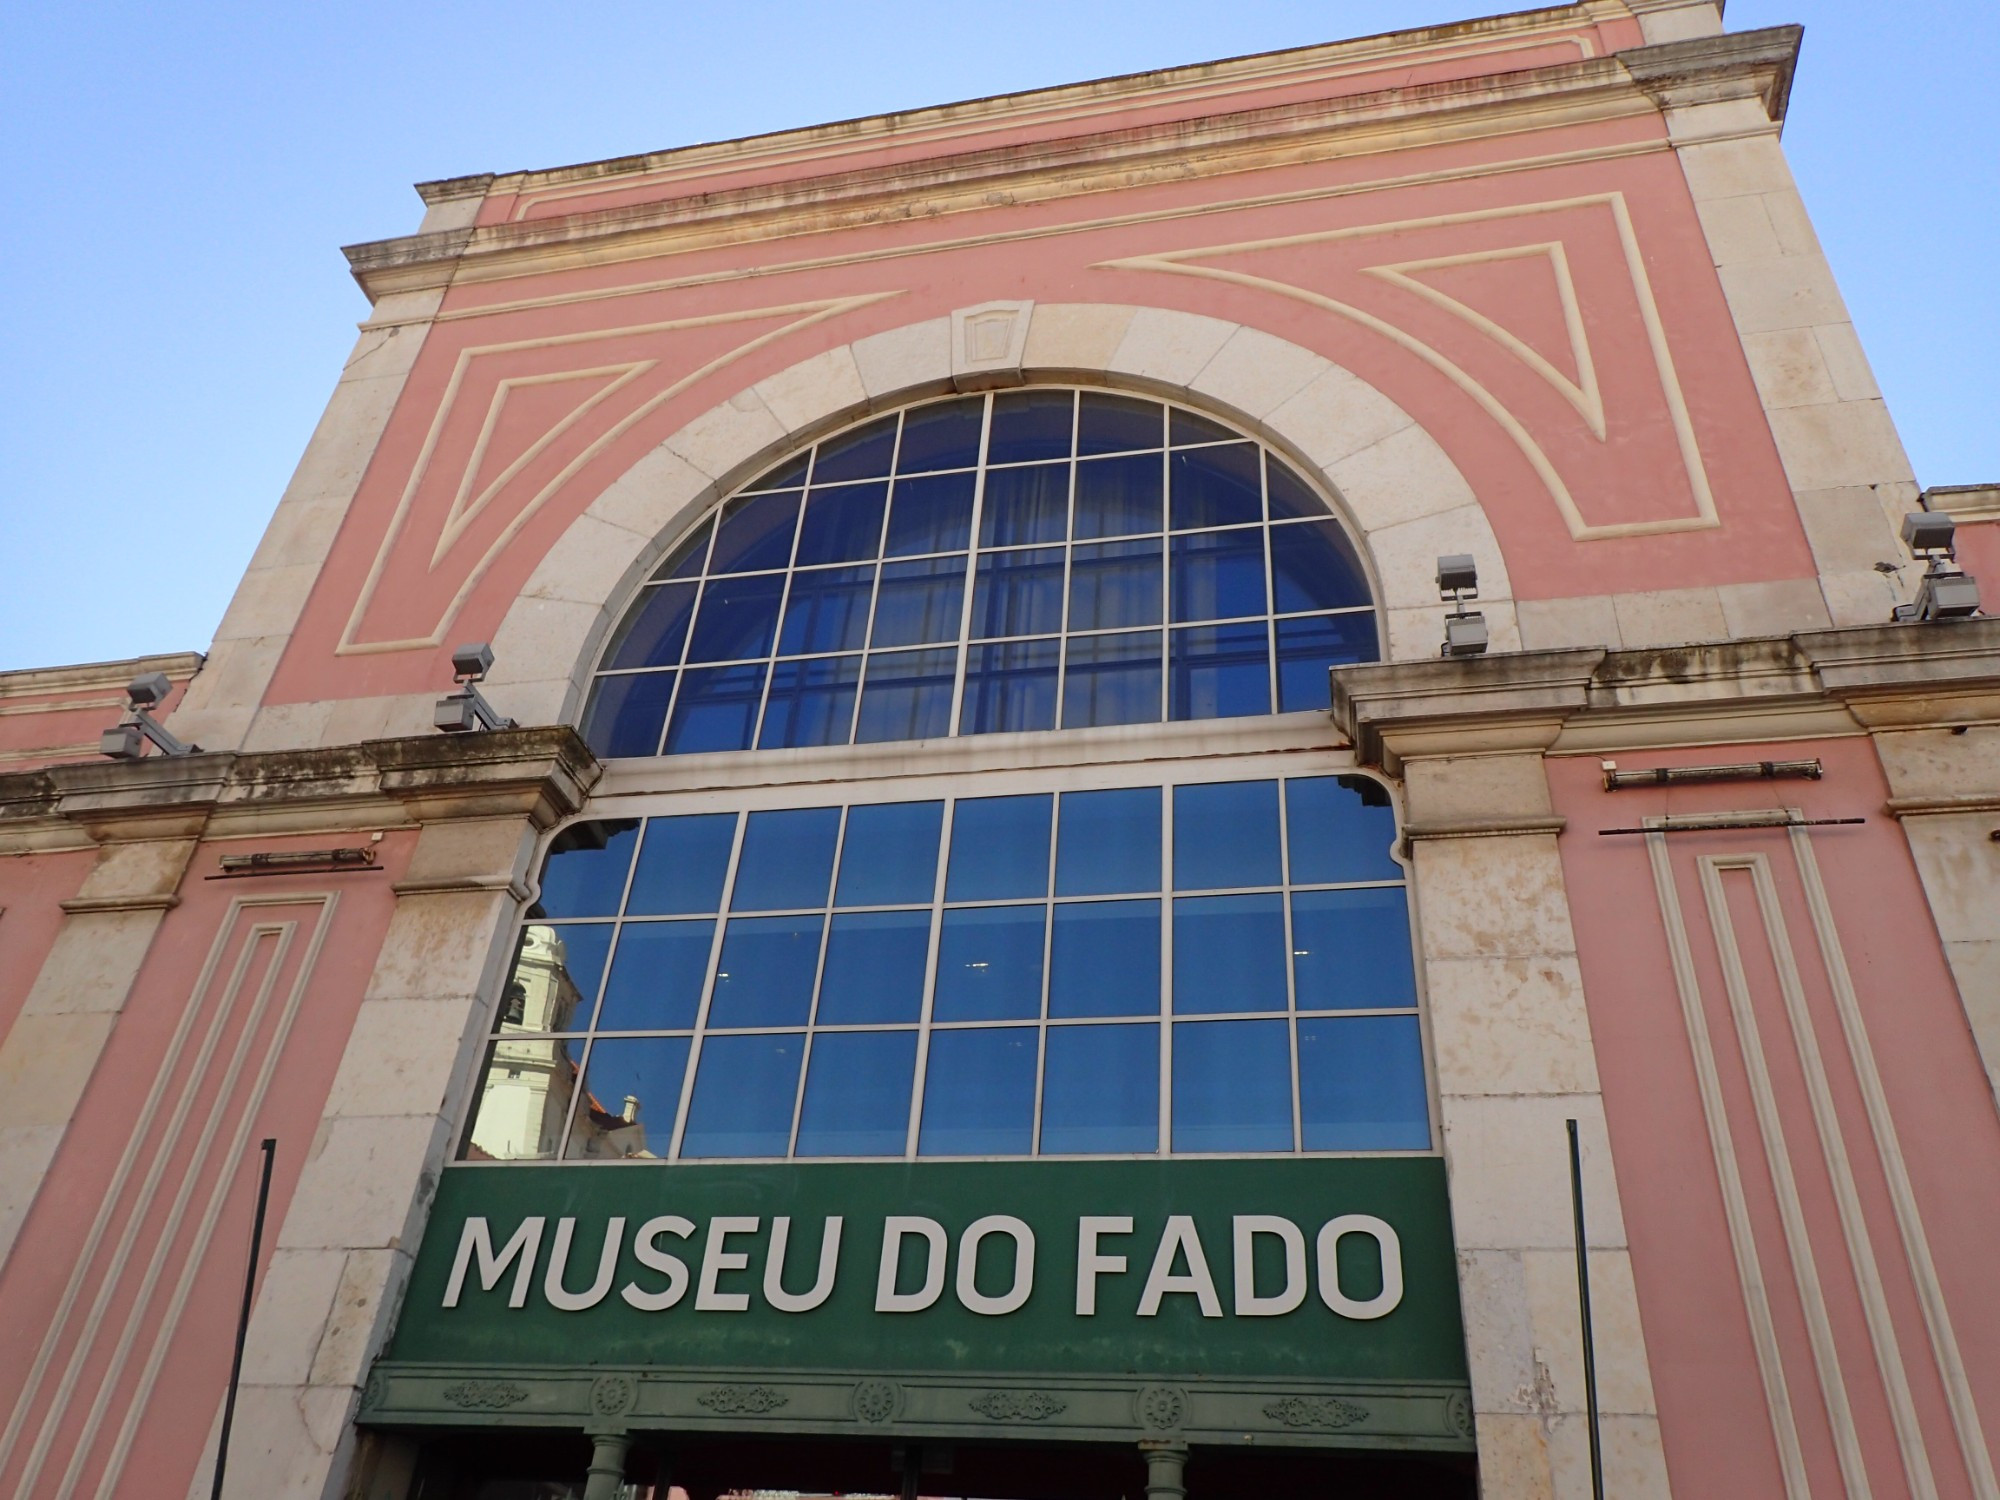 Fado Museum, Portugal